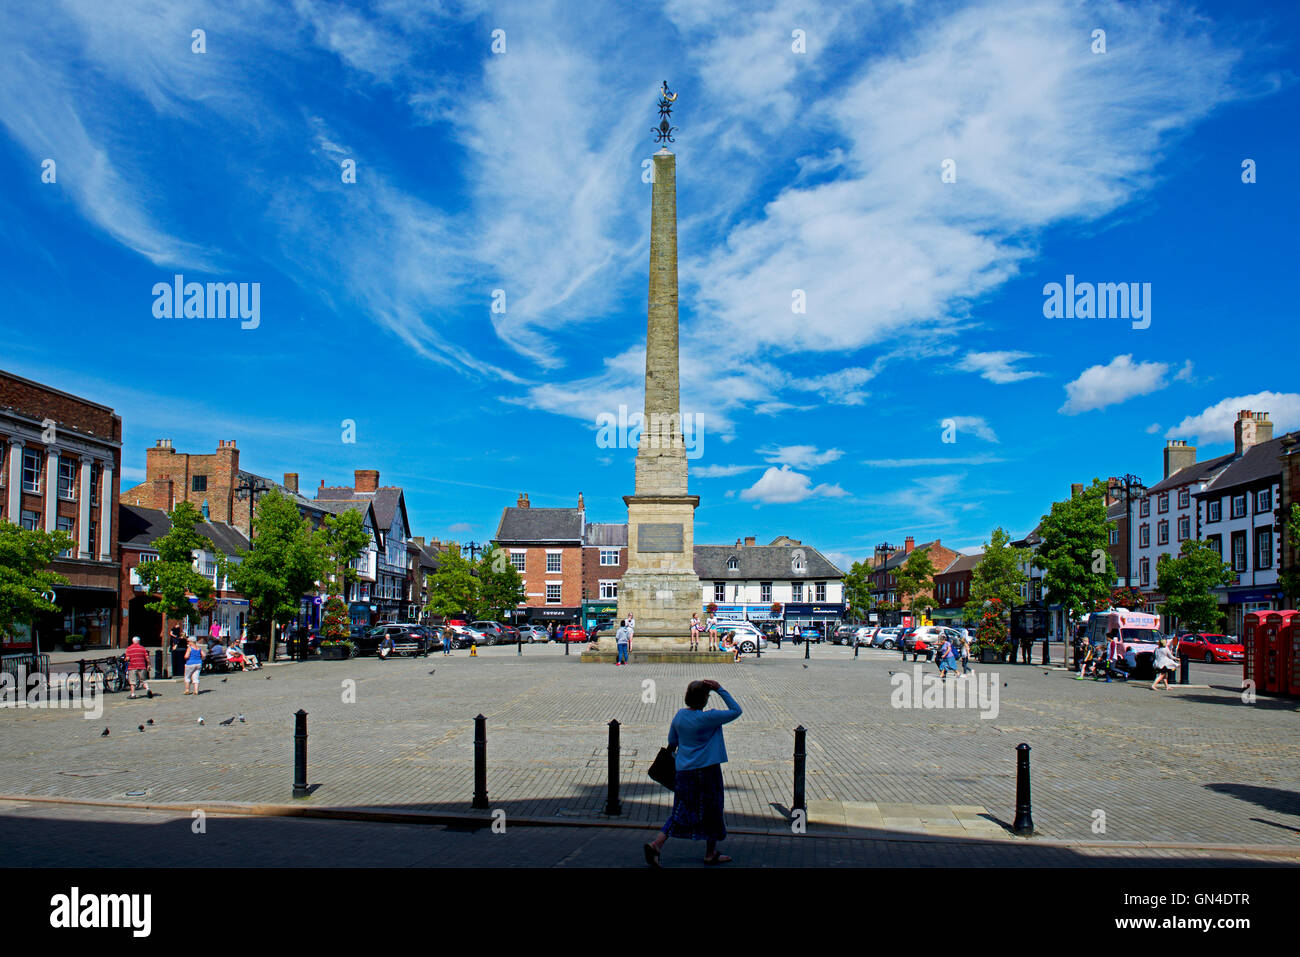 El obelisco de la plaza del mercado, de Ripon, North Yorkshire, Inglaterra Foto de stock